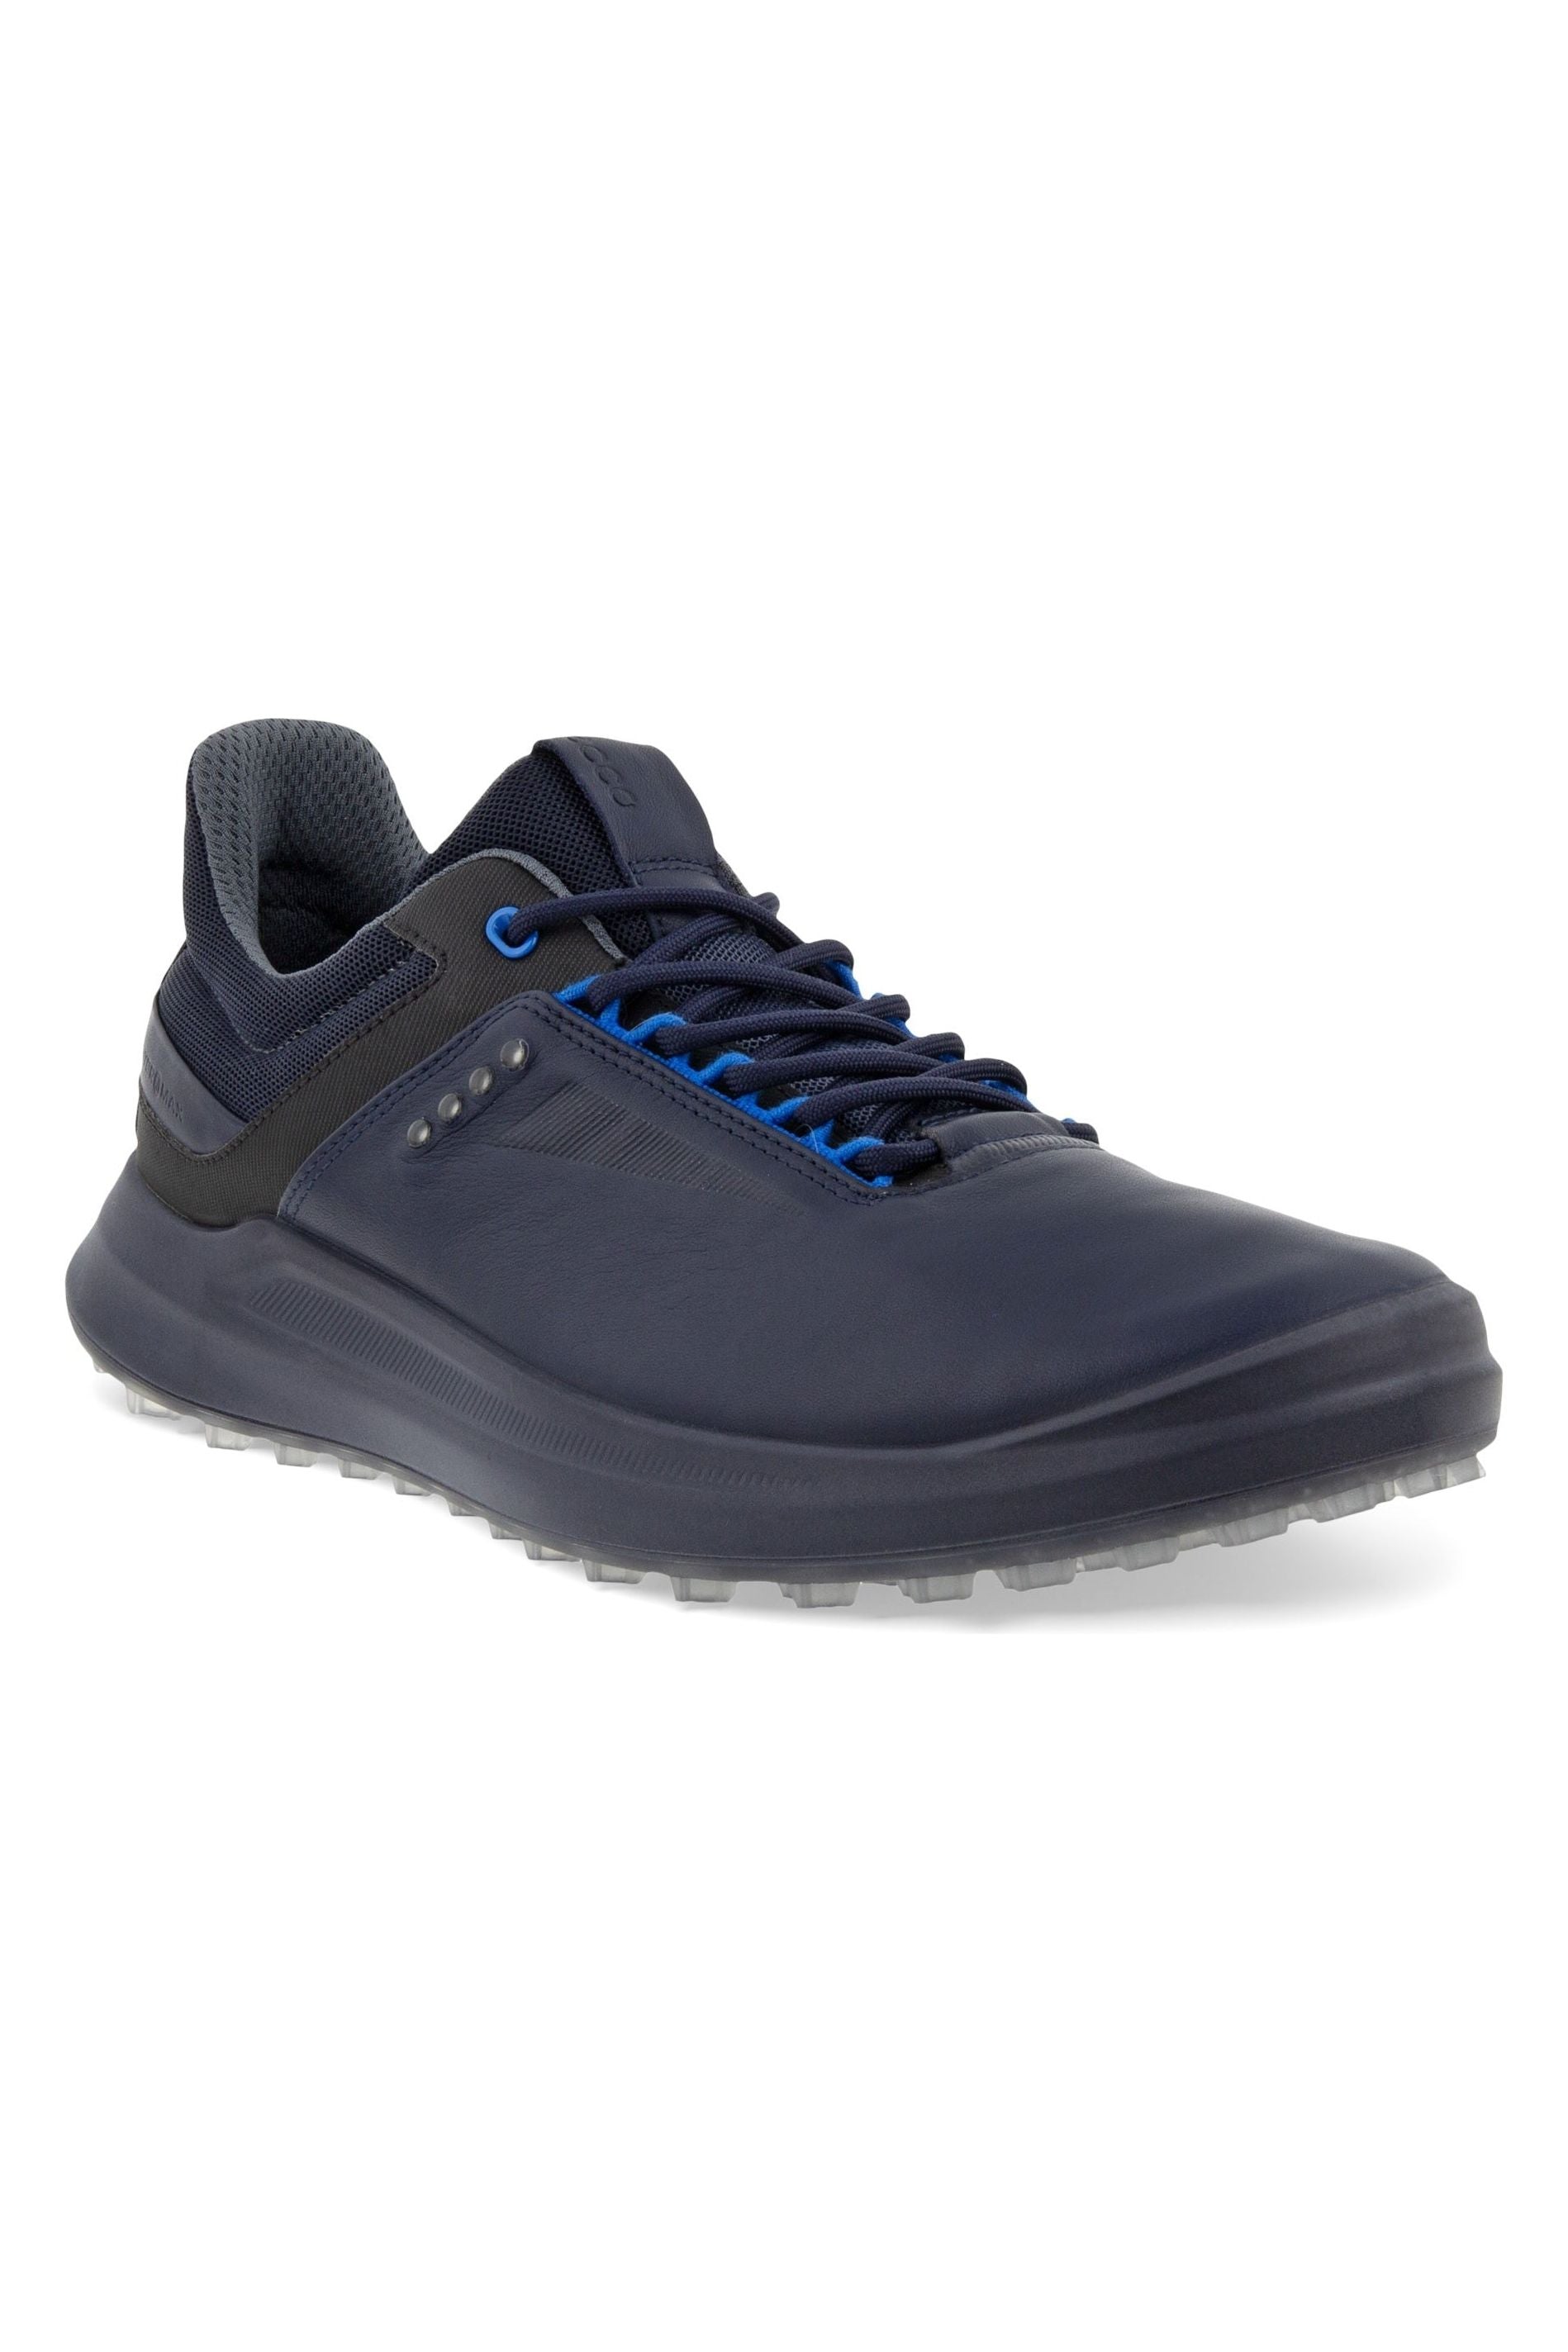 ECCO Mens Golf shoes 100804 60483